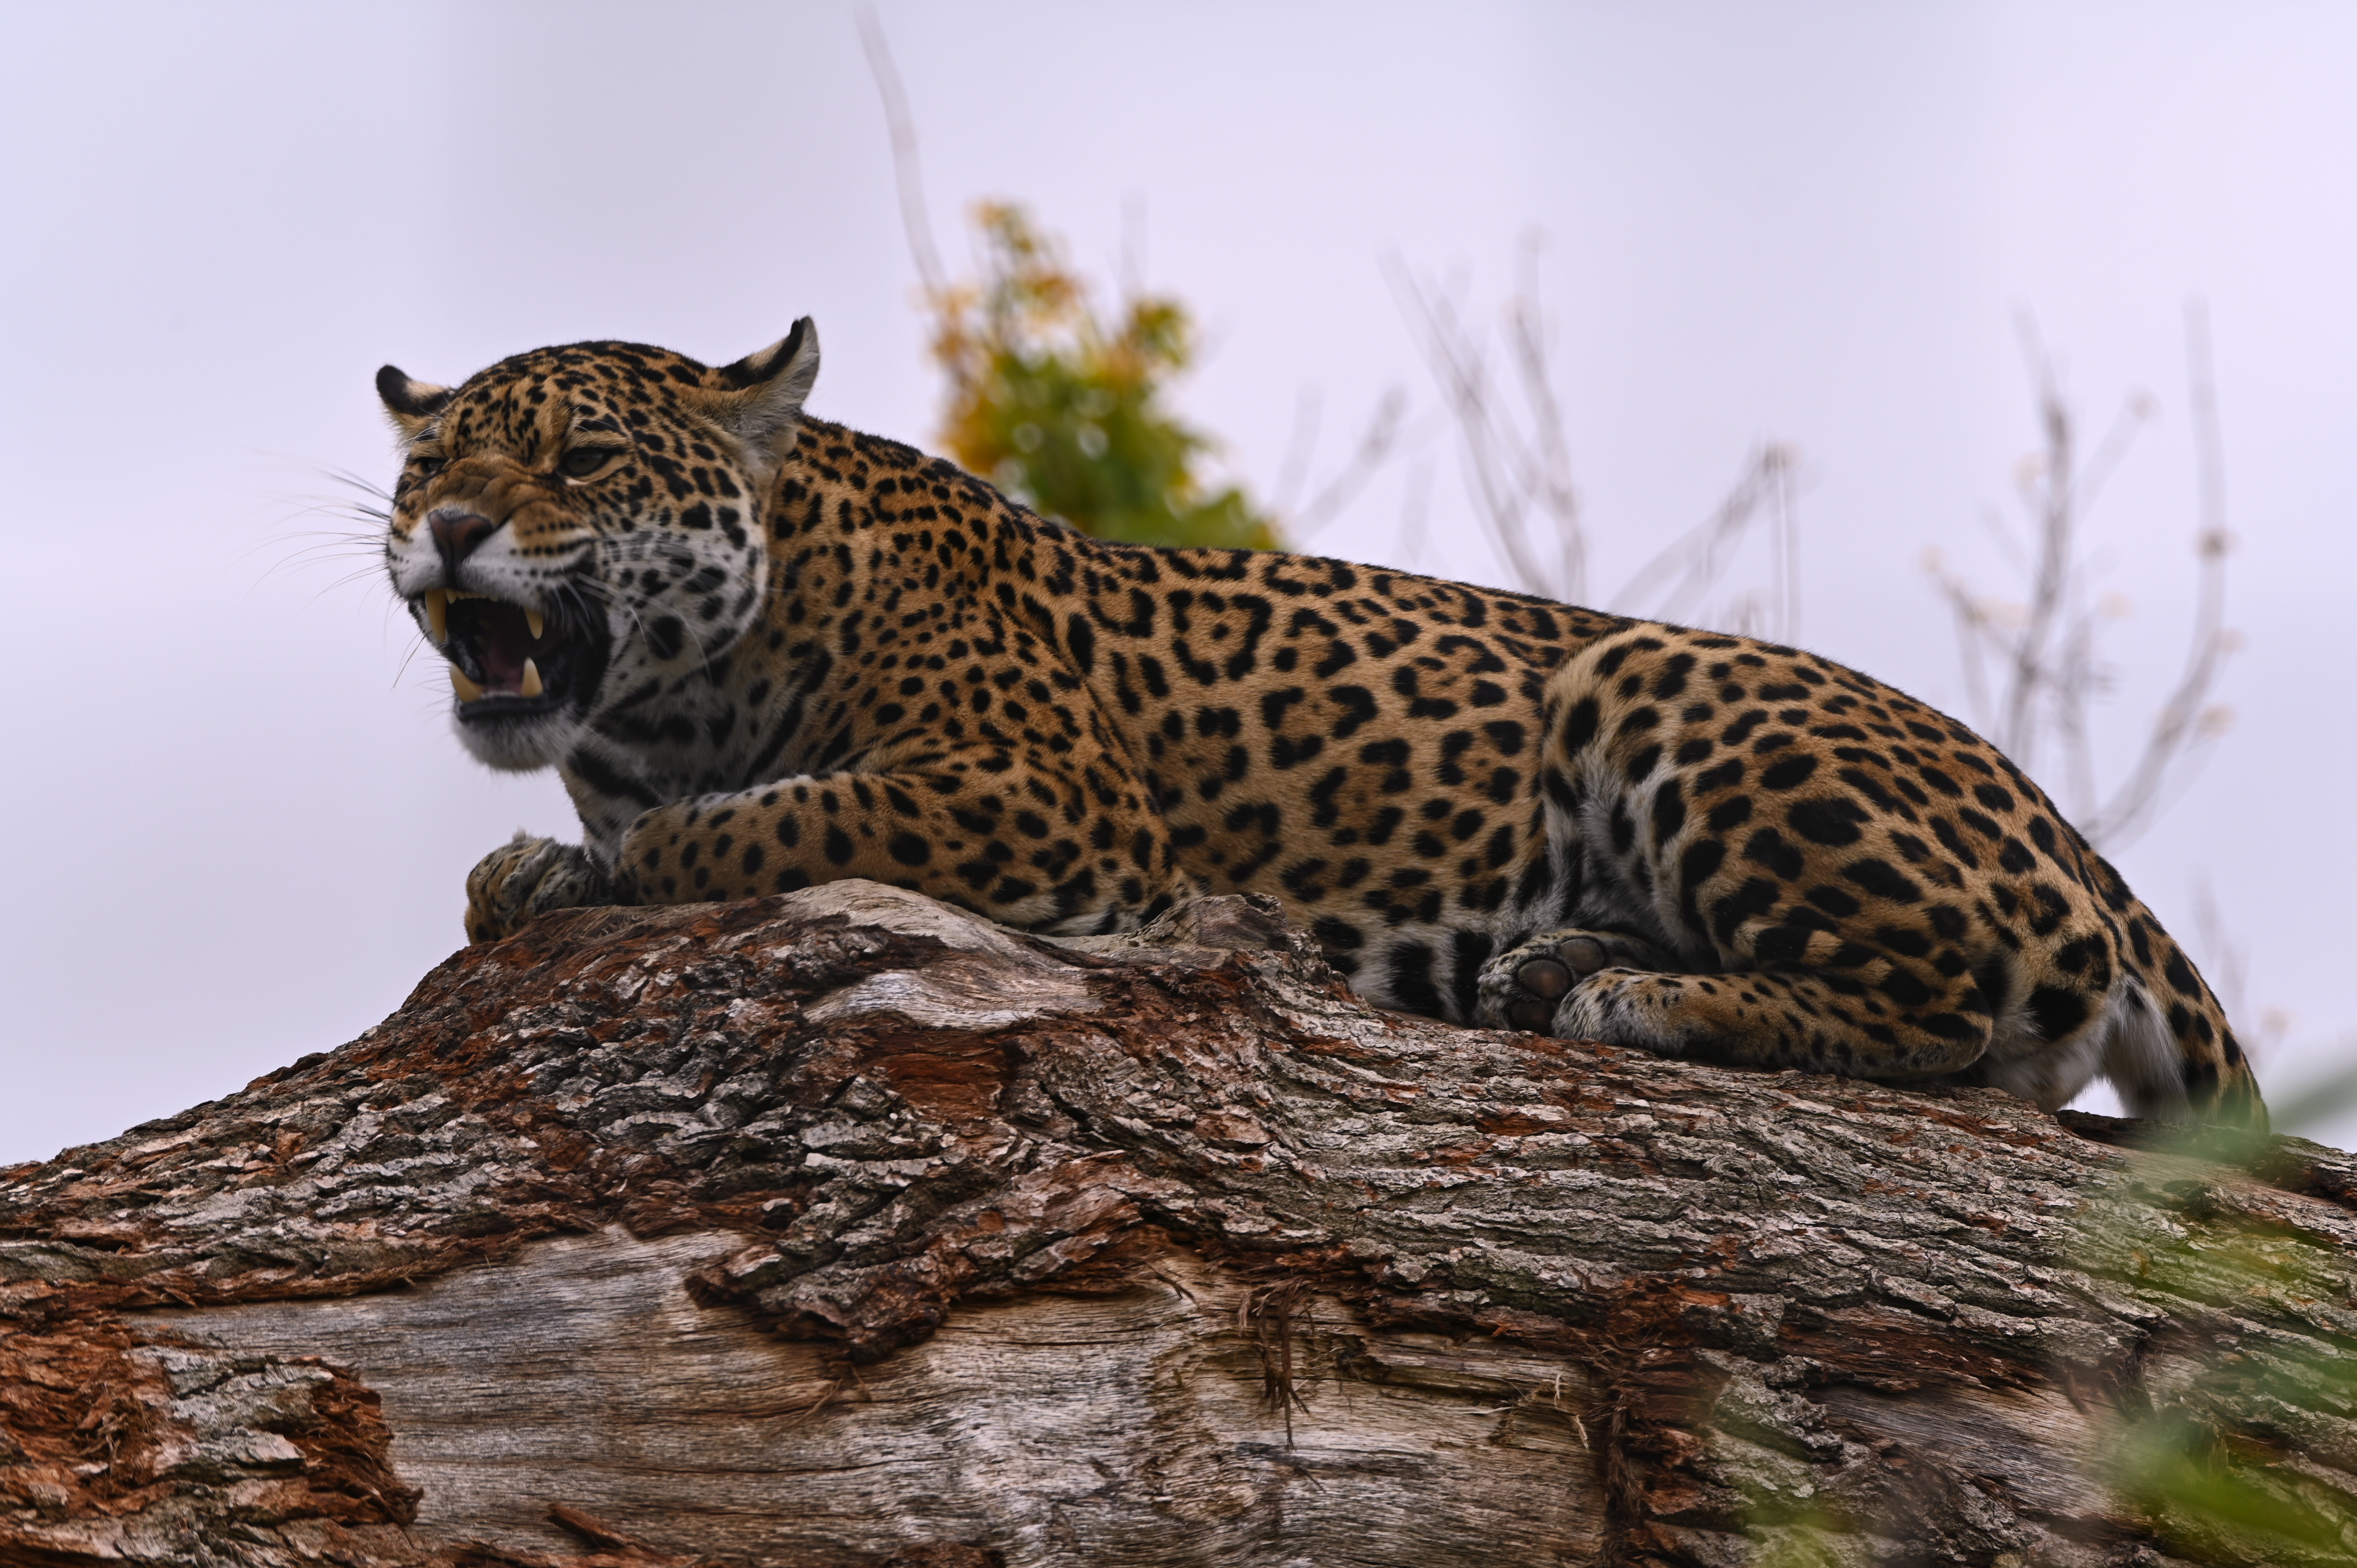 Wildlife Nature Feline Big Cats Mammals Jaguars 6048x4024